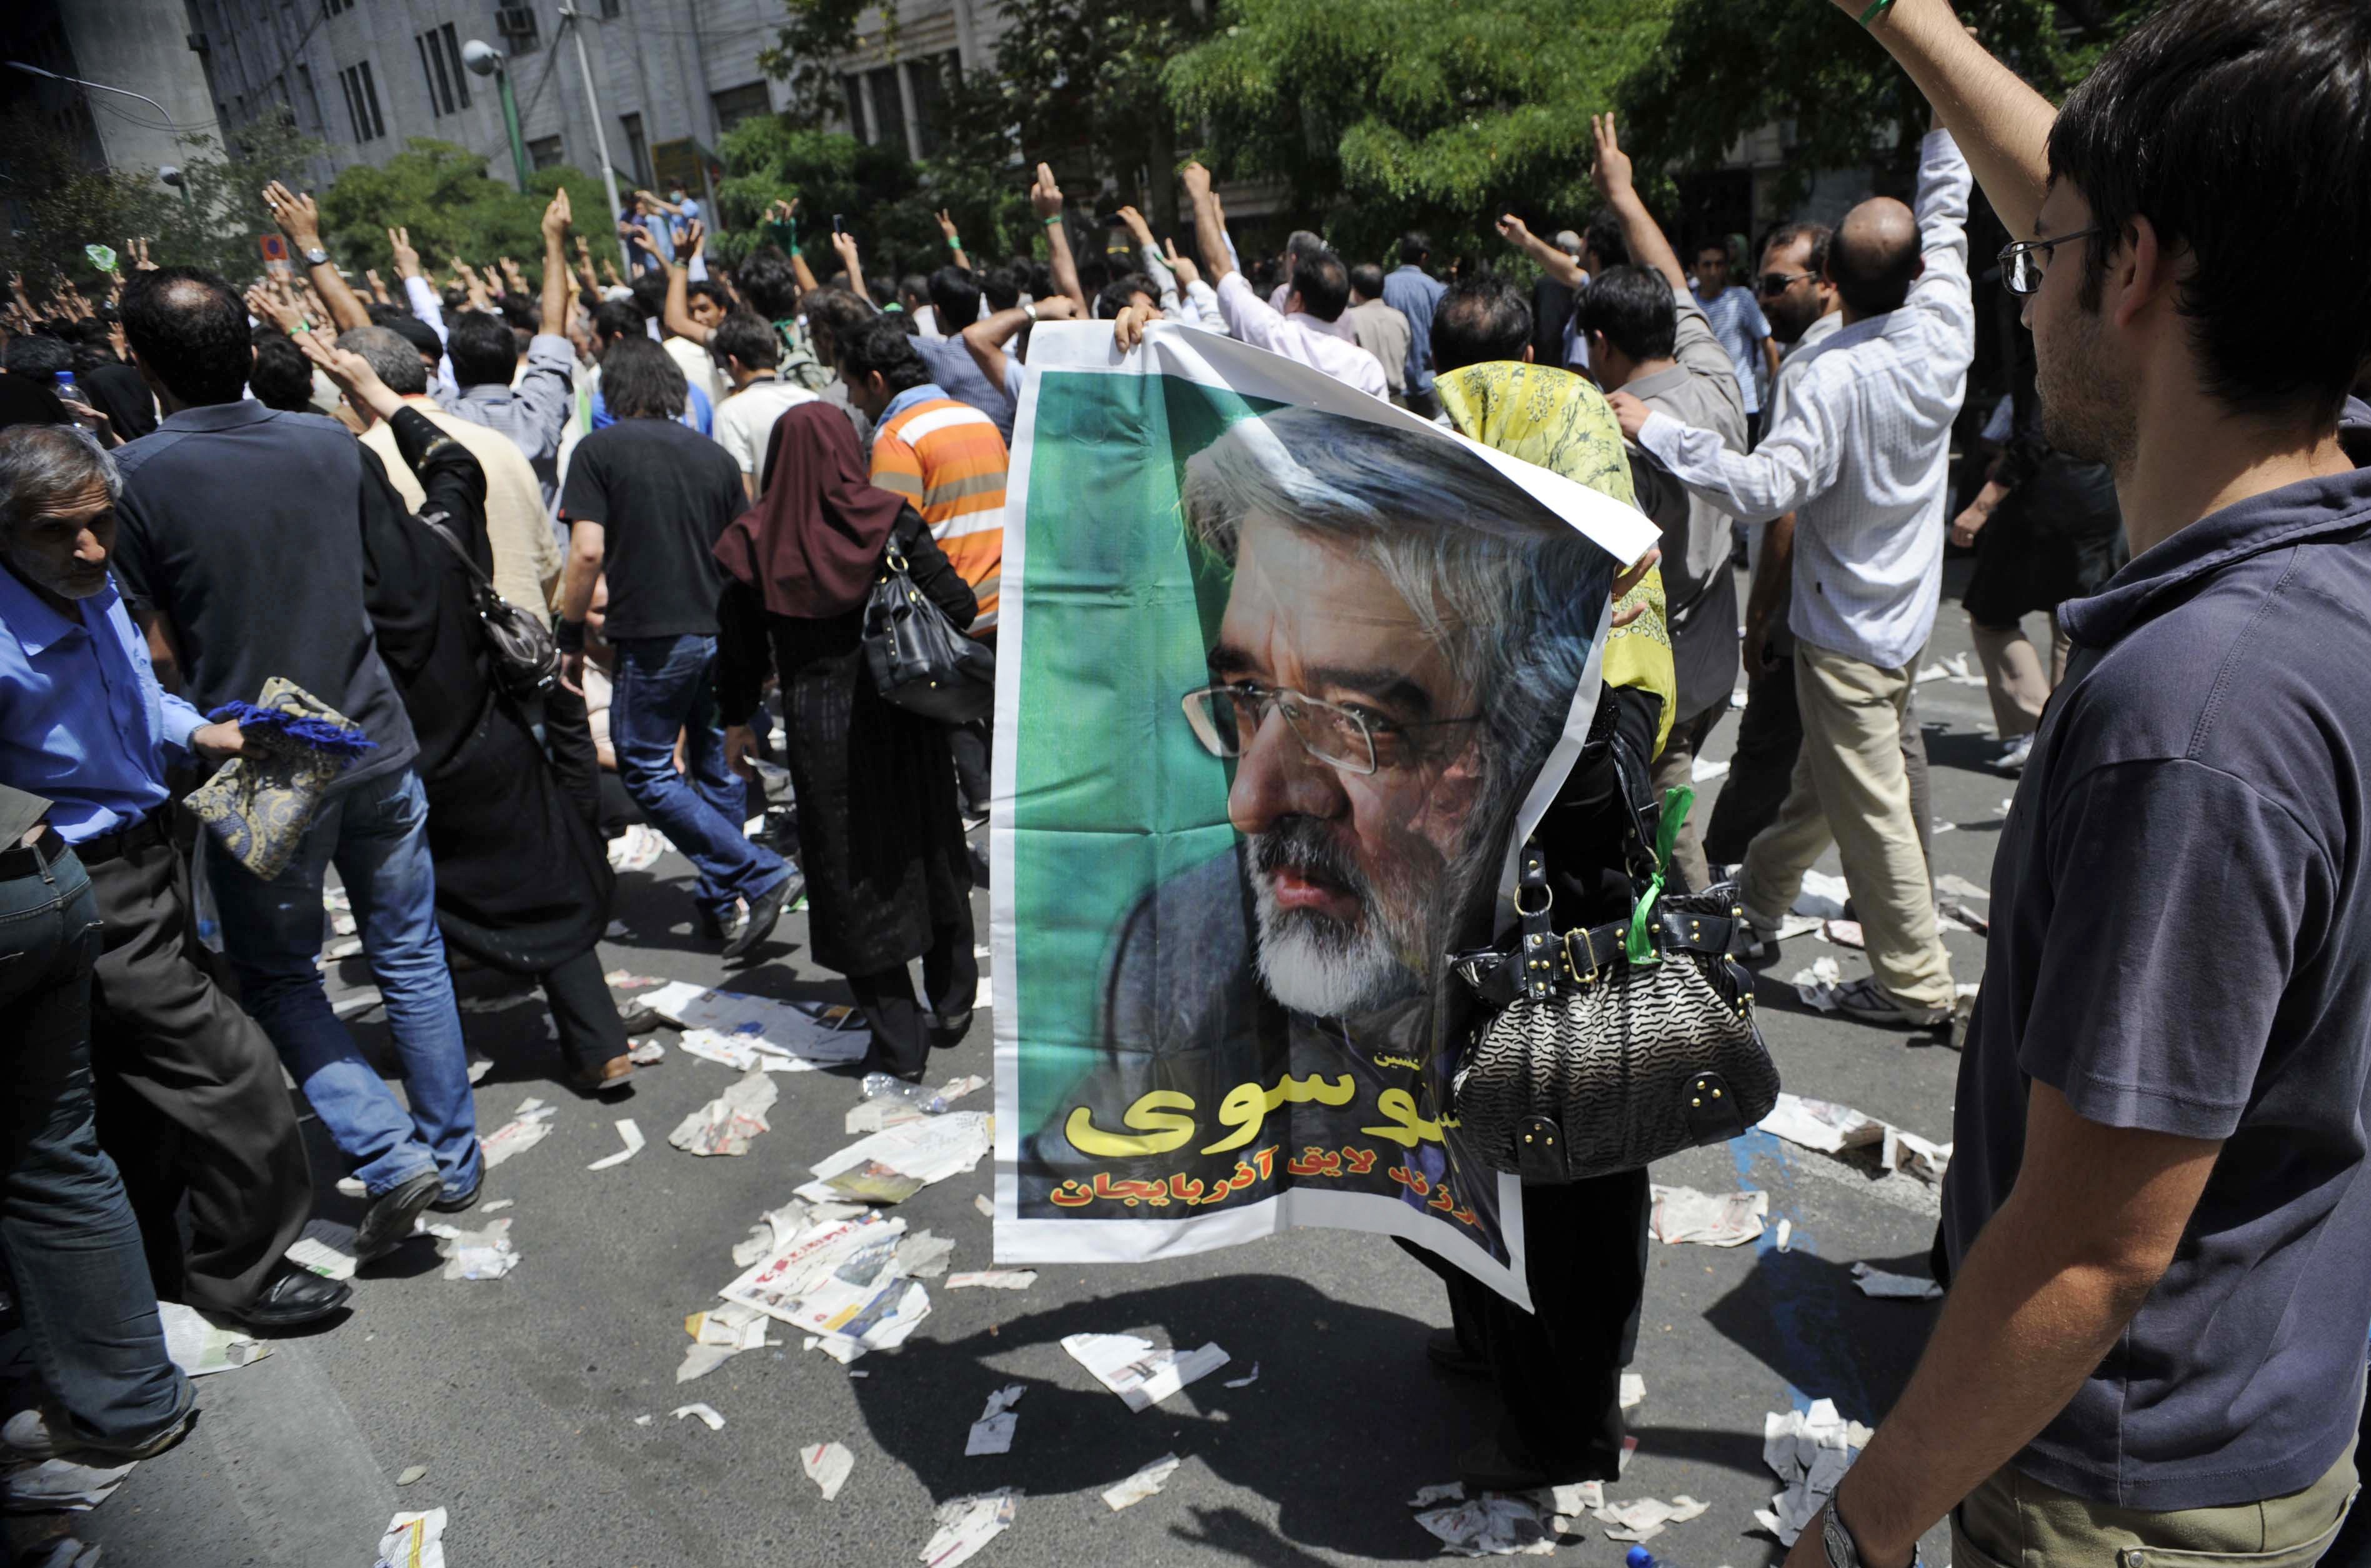 En kvinnlig anhängare håller upp en poster av Mousavi.